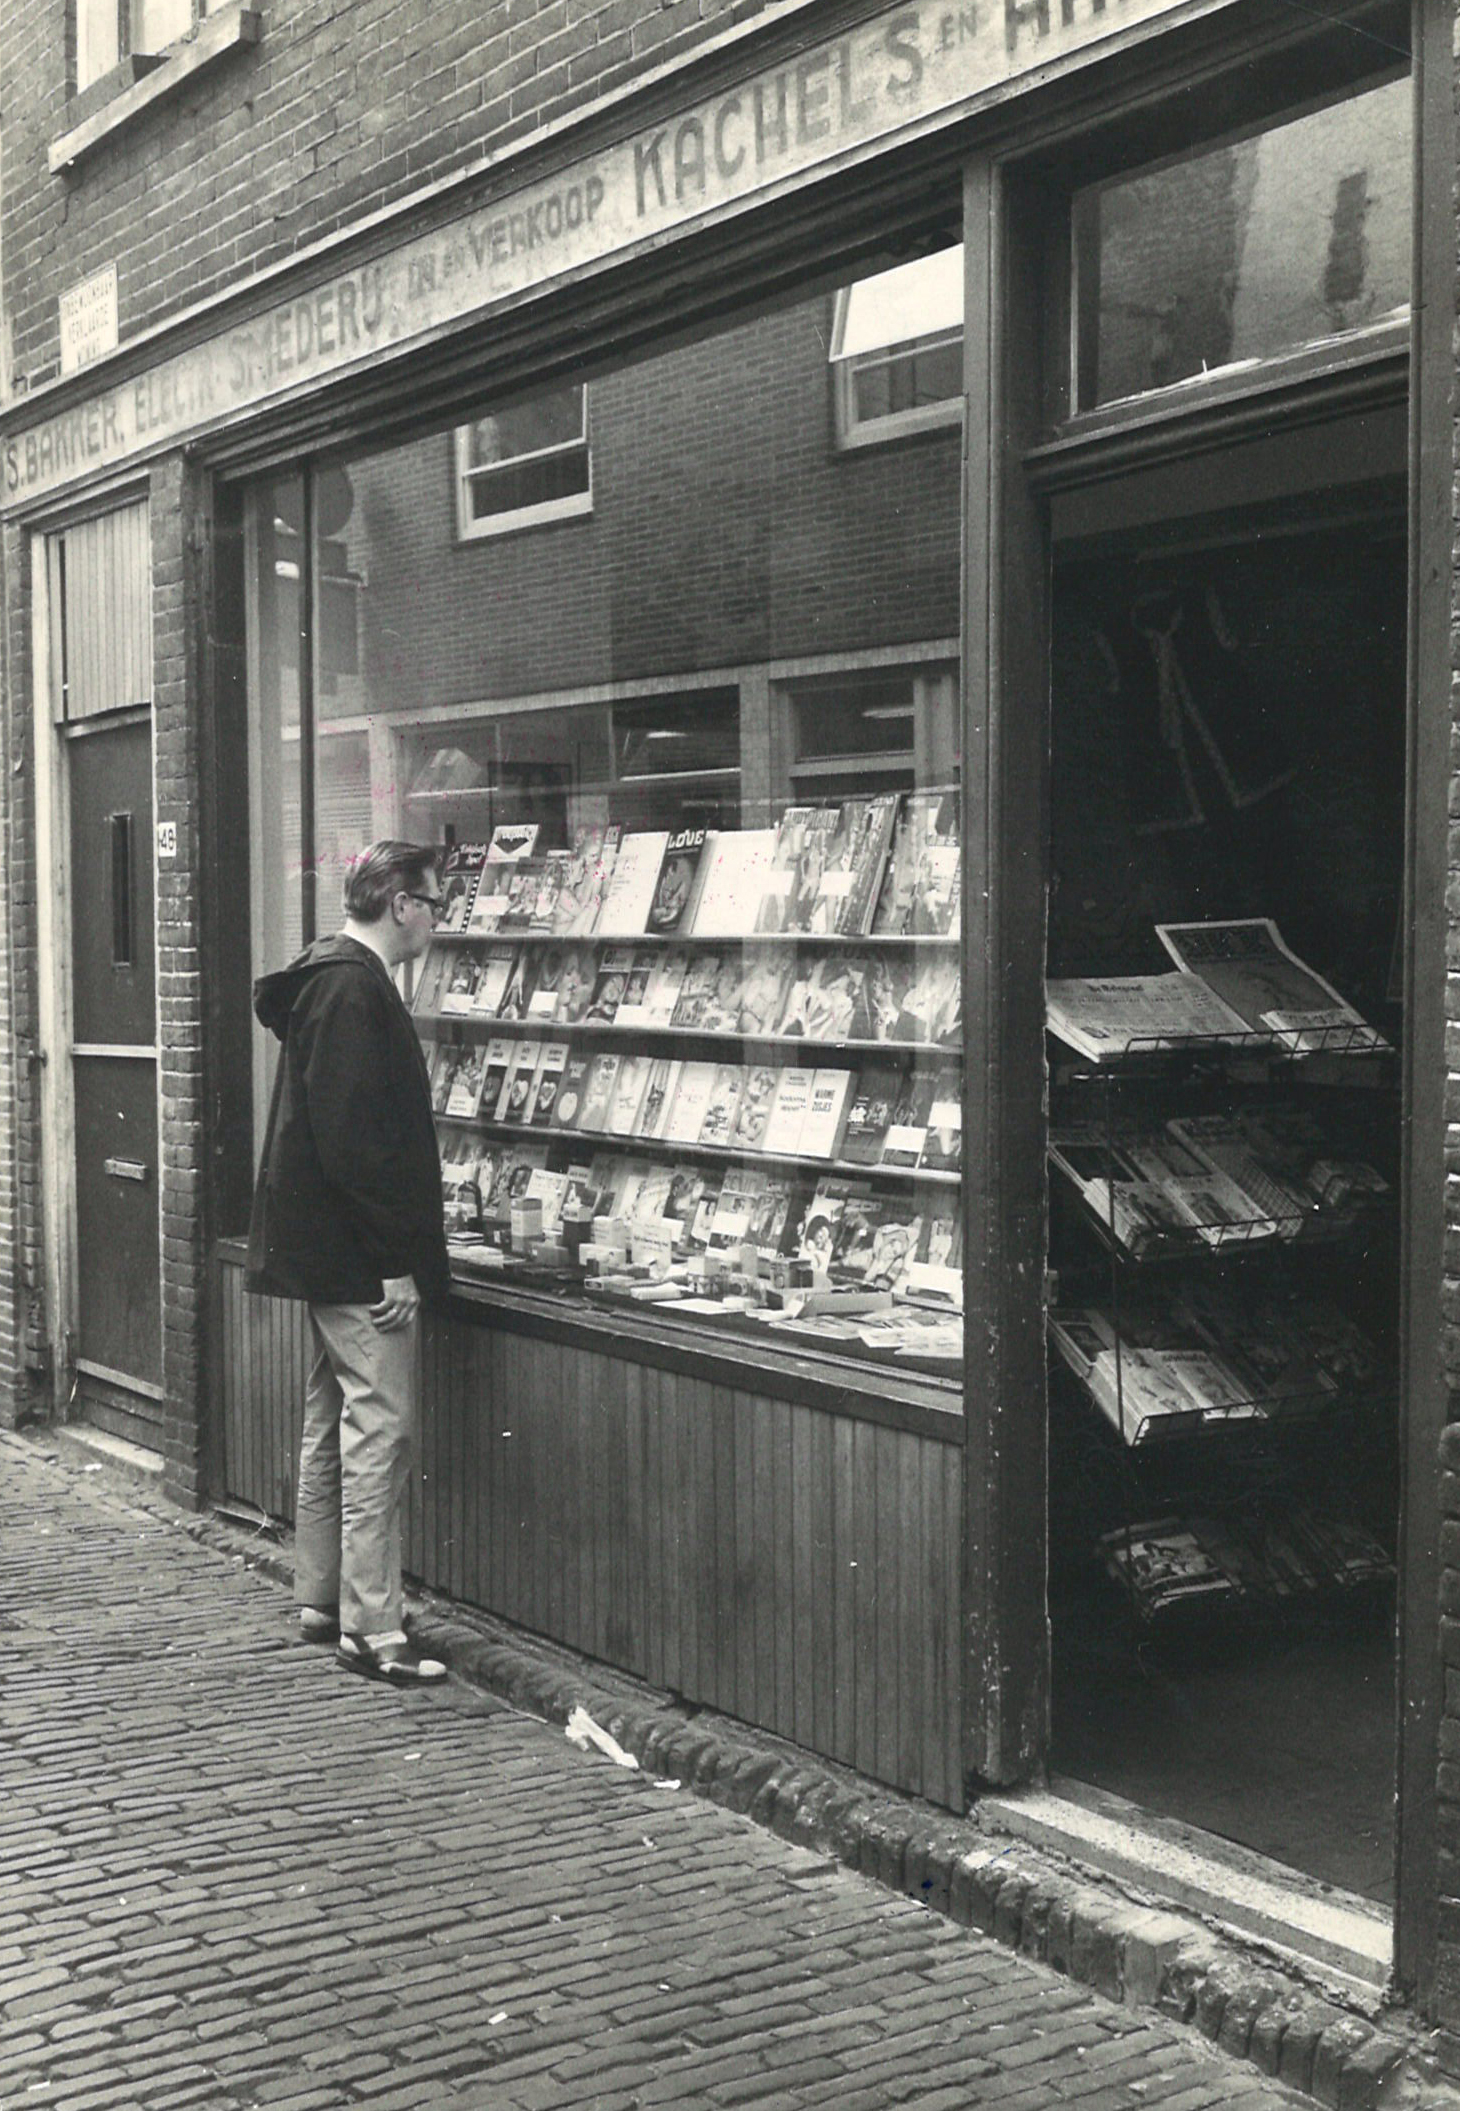 sekwinkel van Alkmaar in de Achterstraat